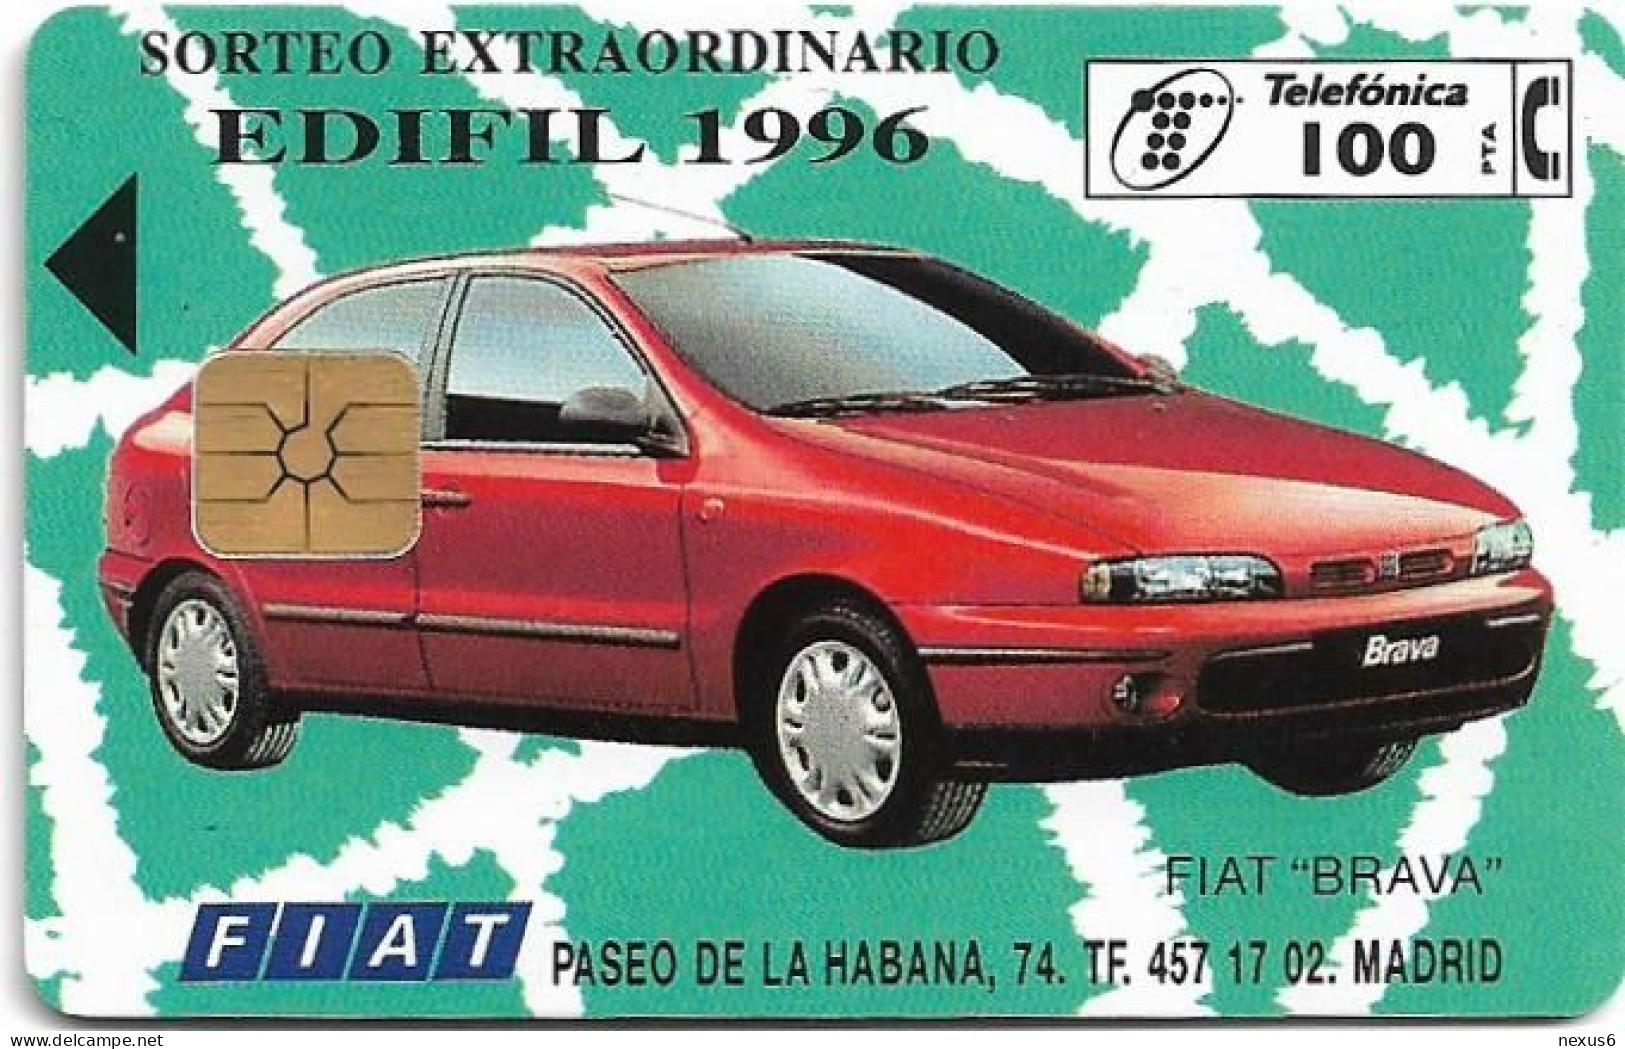 Spain - Telefónica - Edifil 1996 - Sorteo Fiat Brava - P-163 - 12.1995, 7.000ex, Used - Emisiones Privadas